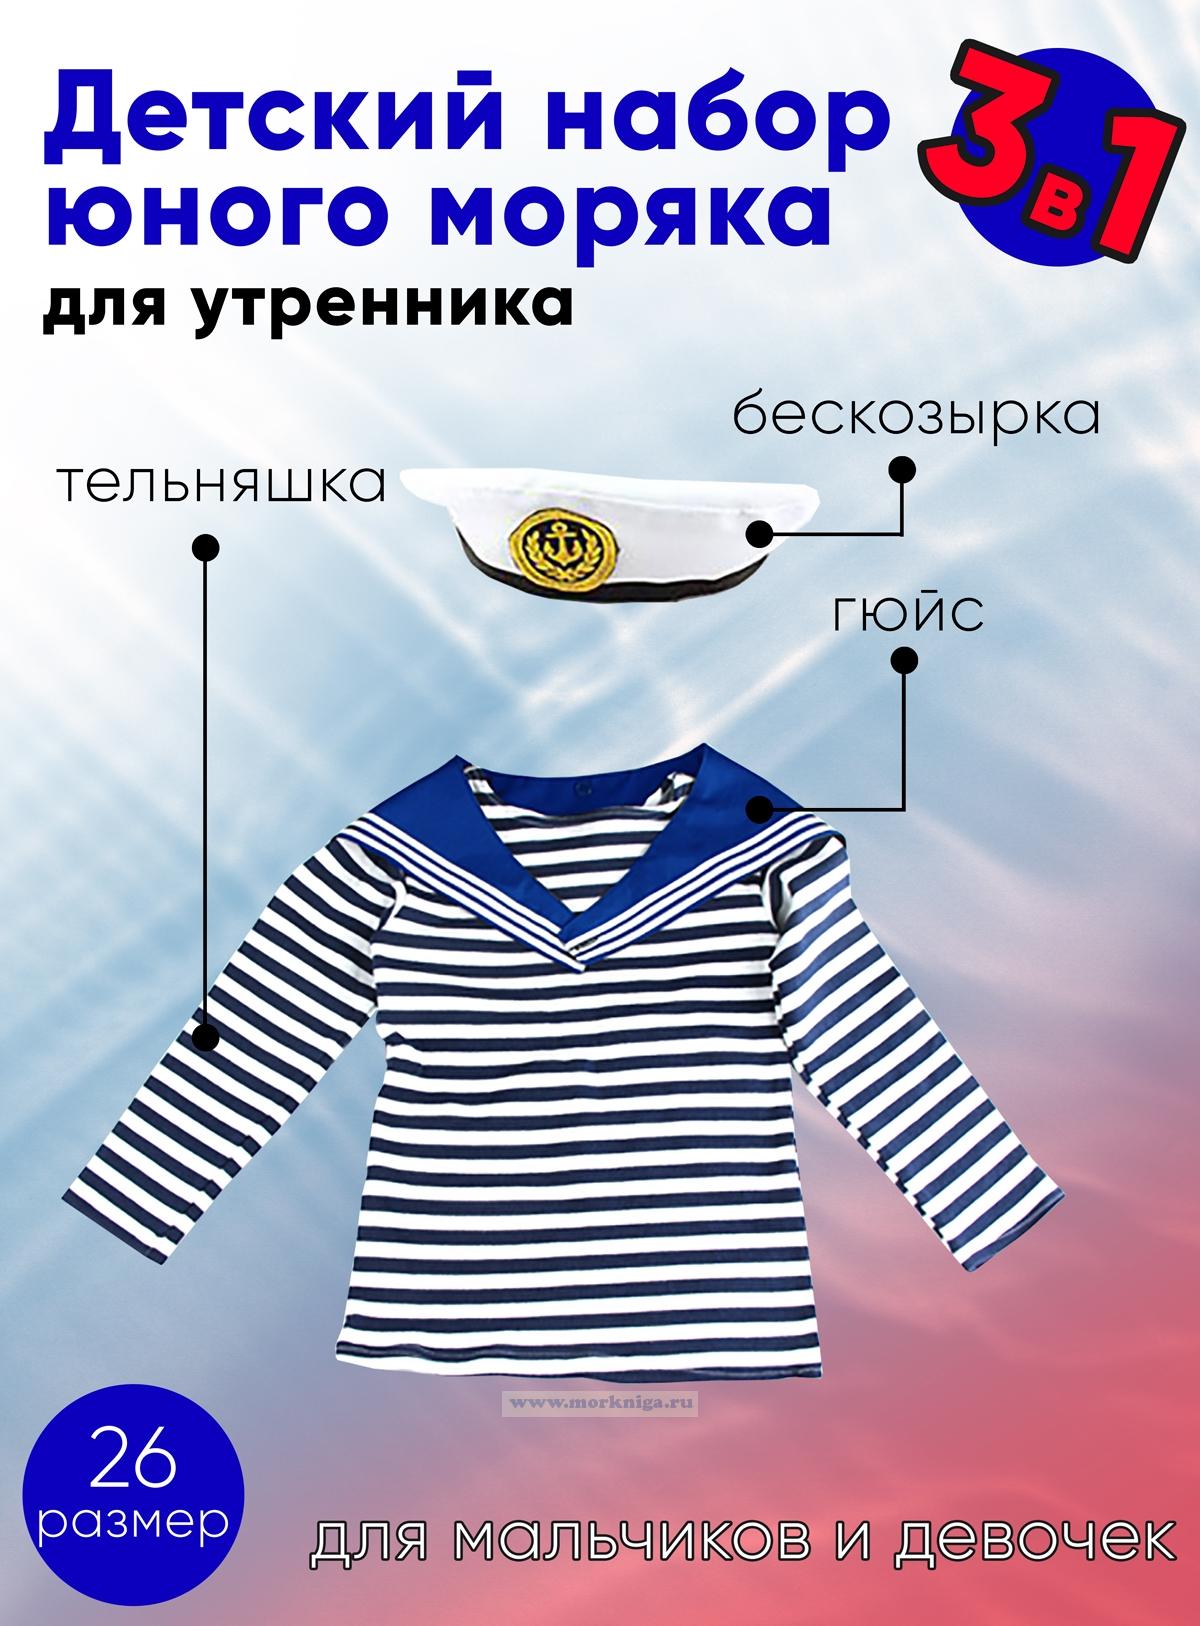 Набор юного моряка для утренника (бескозырка, синий гюйс и тельняшка; размер 26)